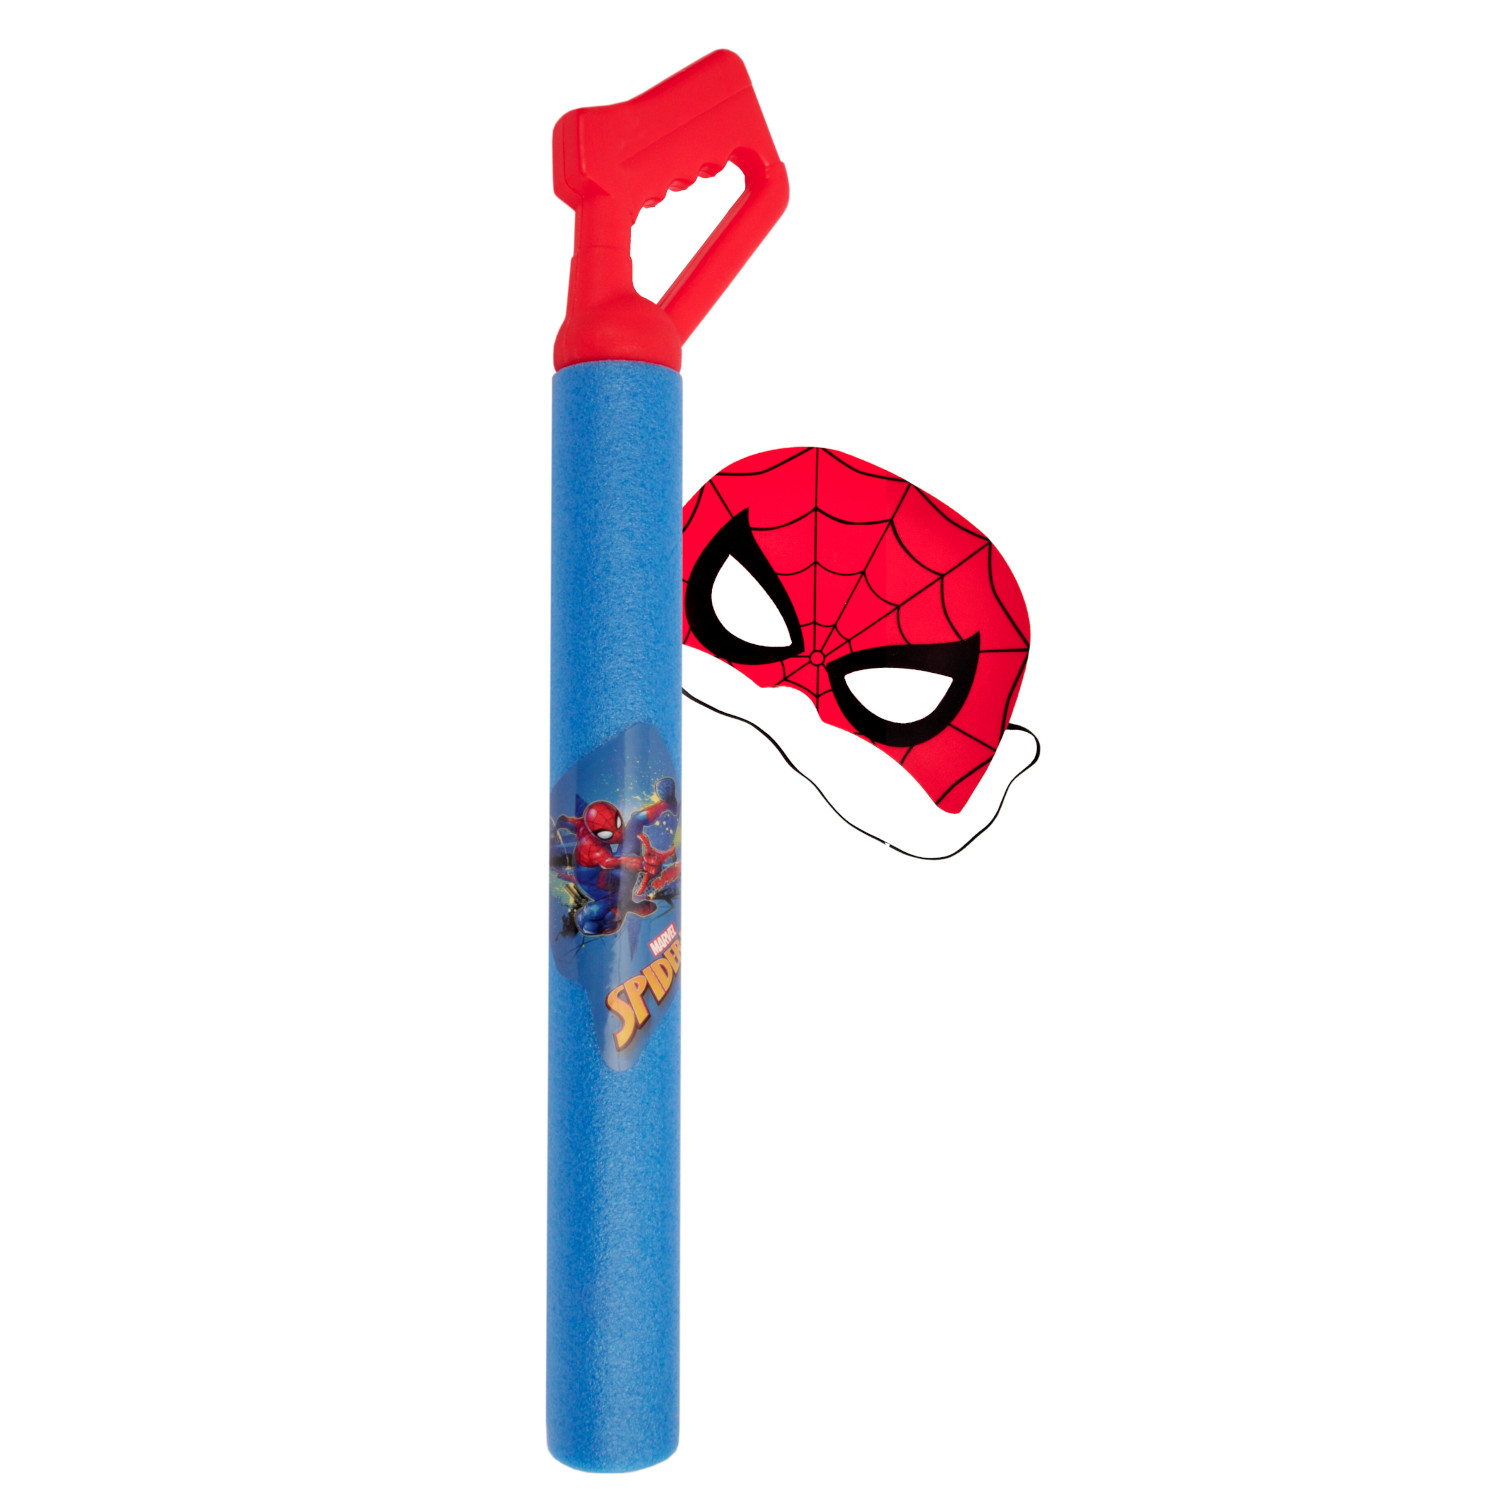 Tubo spara acqua in foam completo di maschera di spiderman - Avengers, Spiderman